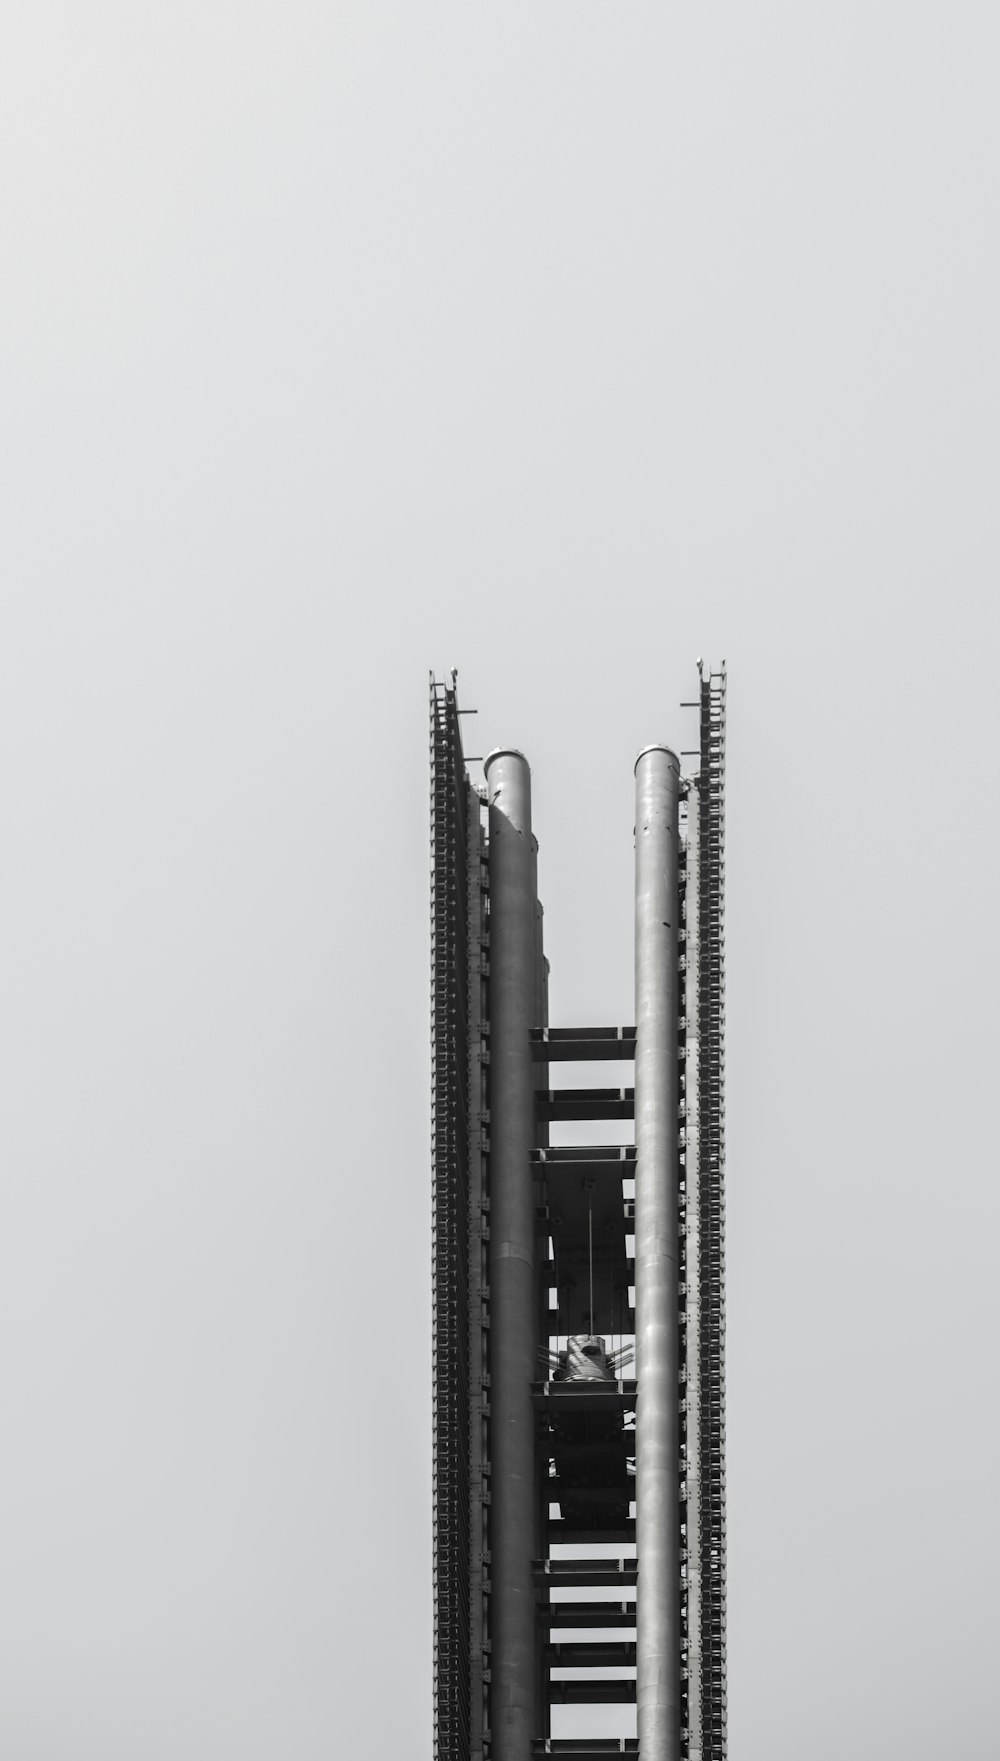 Foto in scala di grigi della torre di metallo grigio